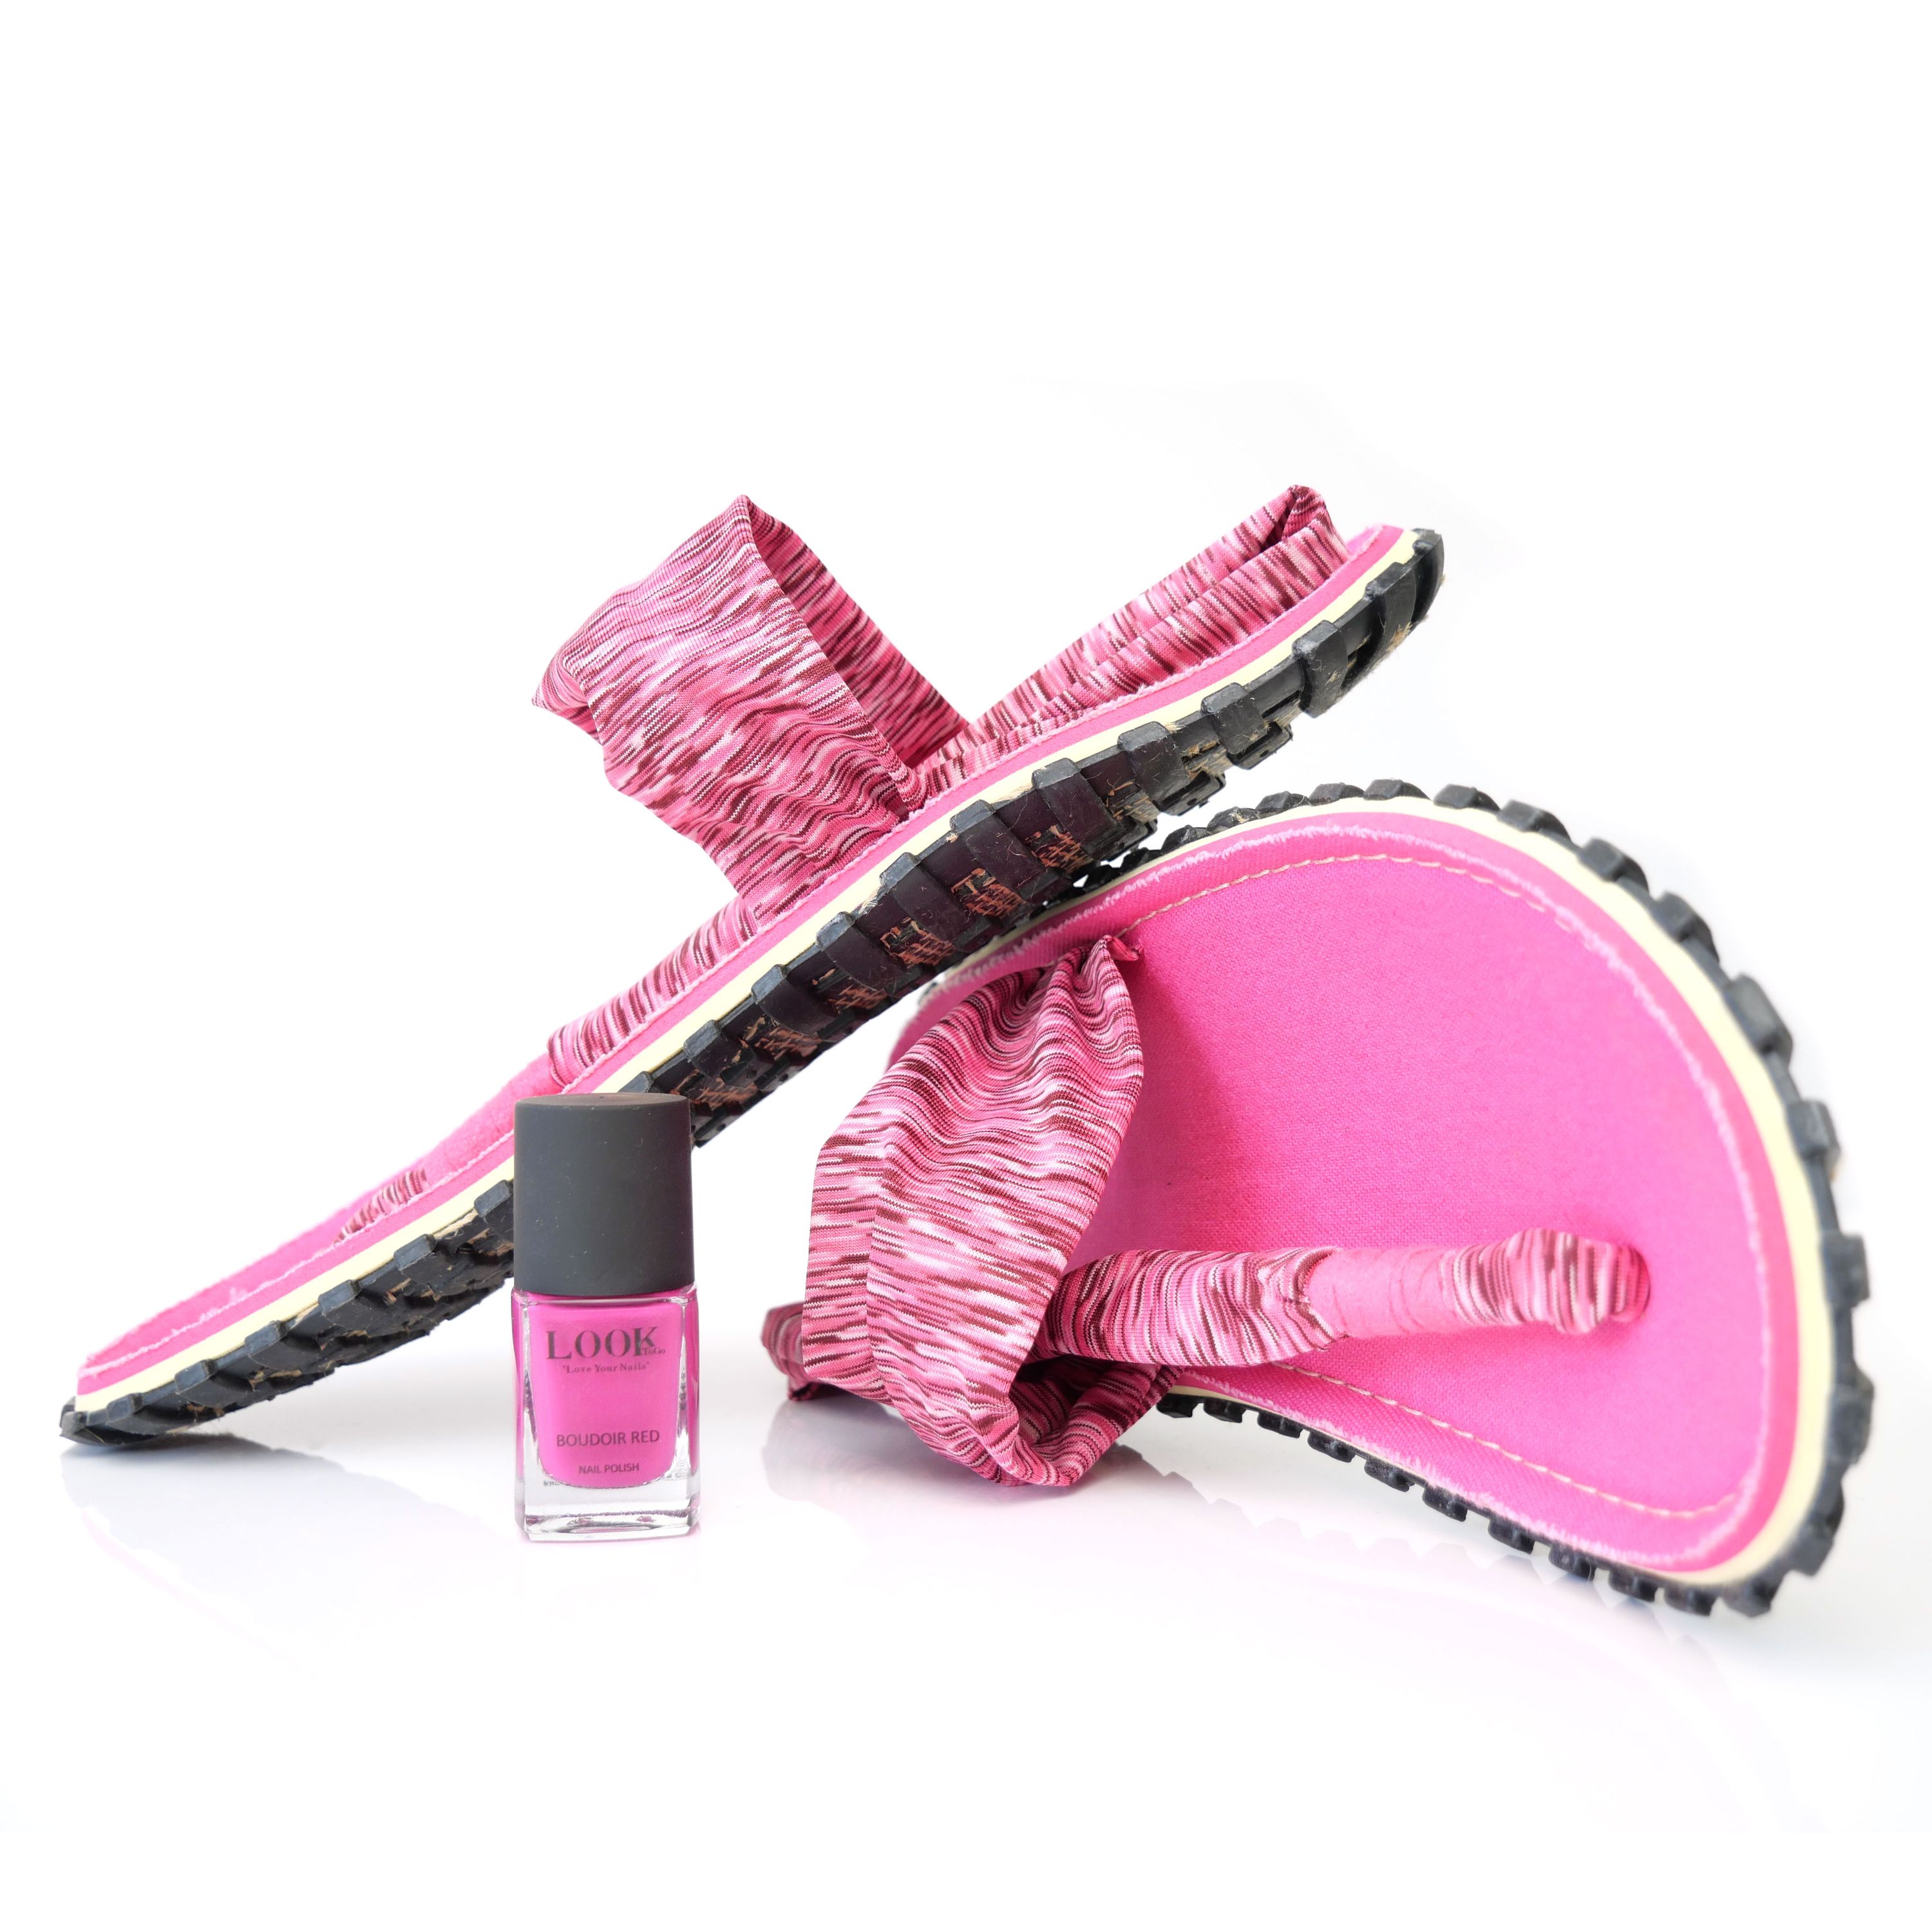 GUMBIES Zehentrenner Set – Slingbacks Pink mit dem Nagellack Boudoir Red 